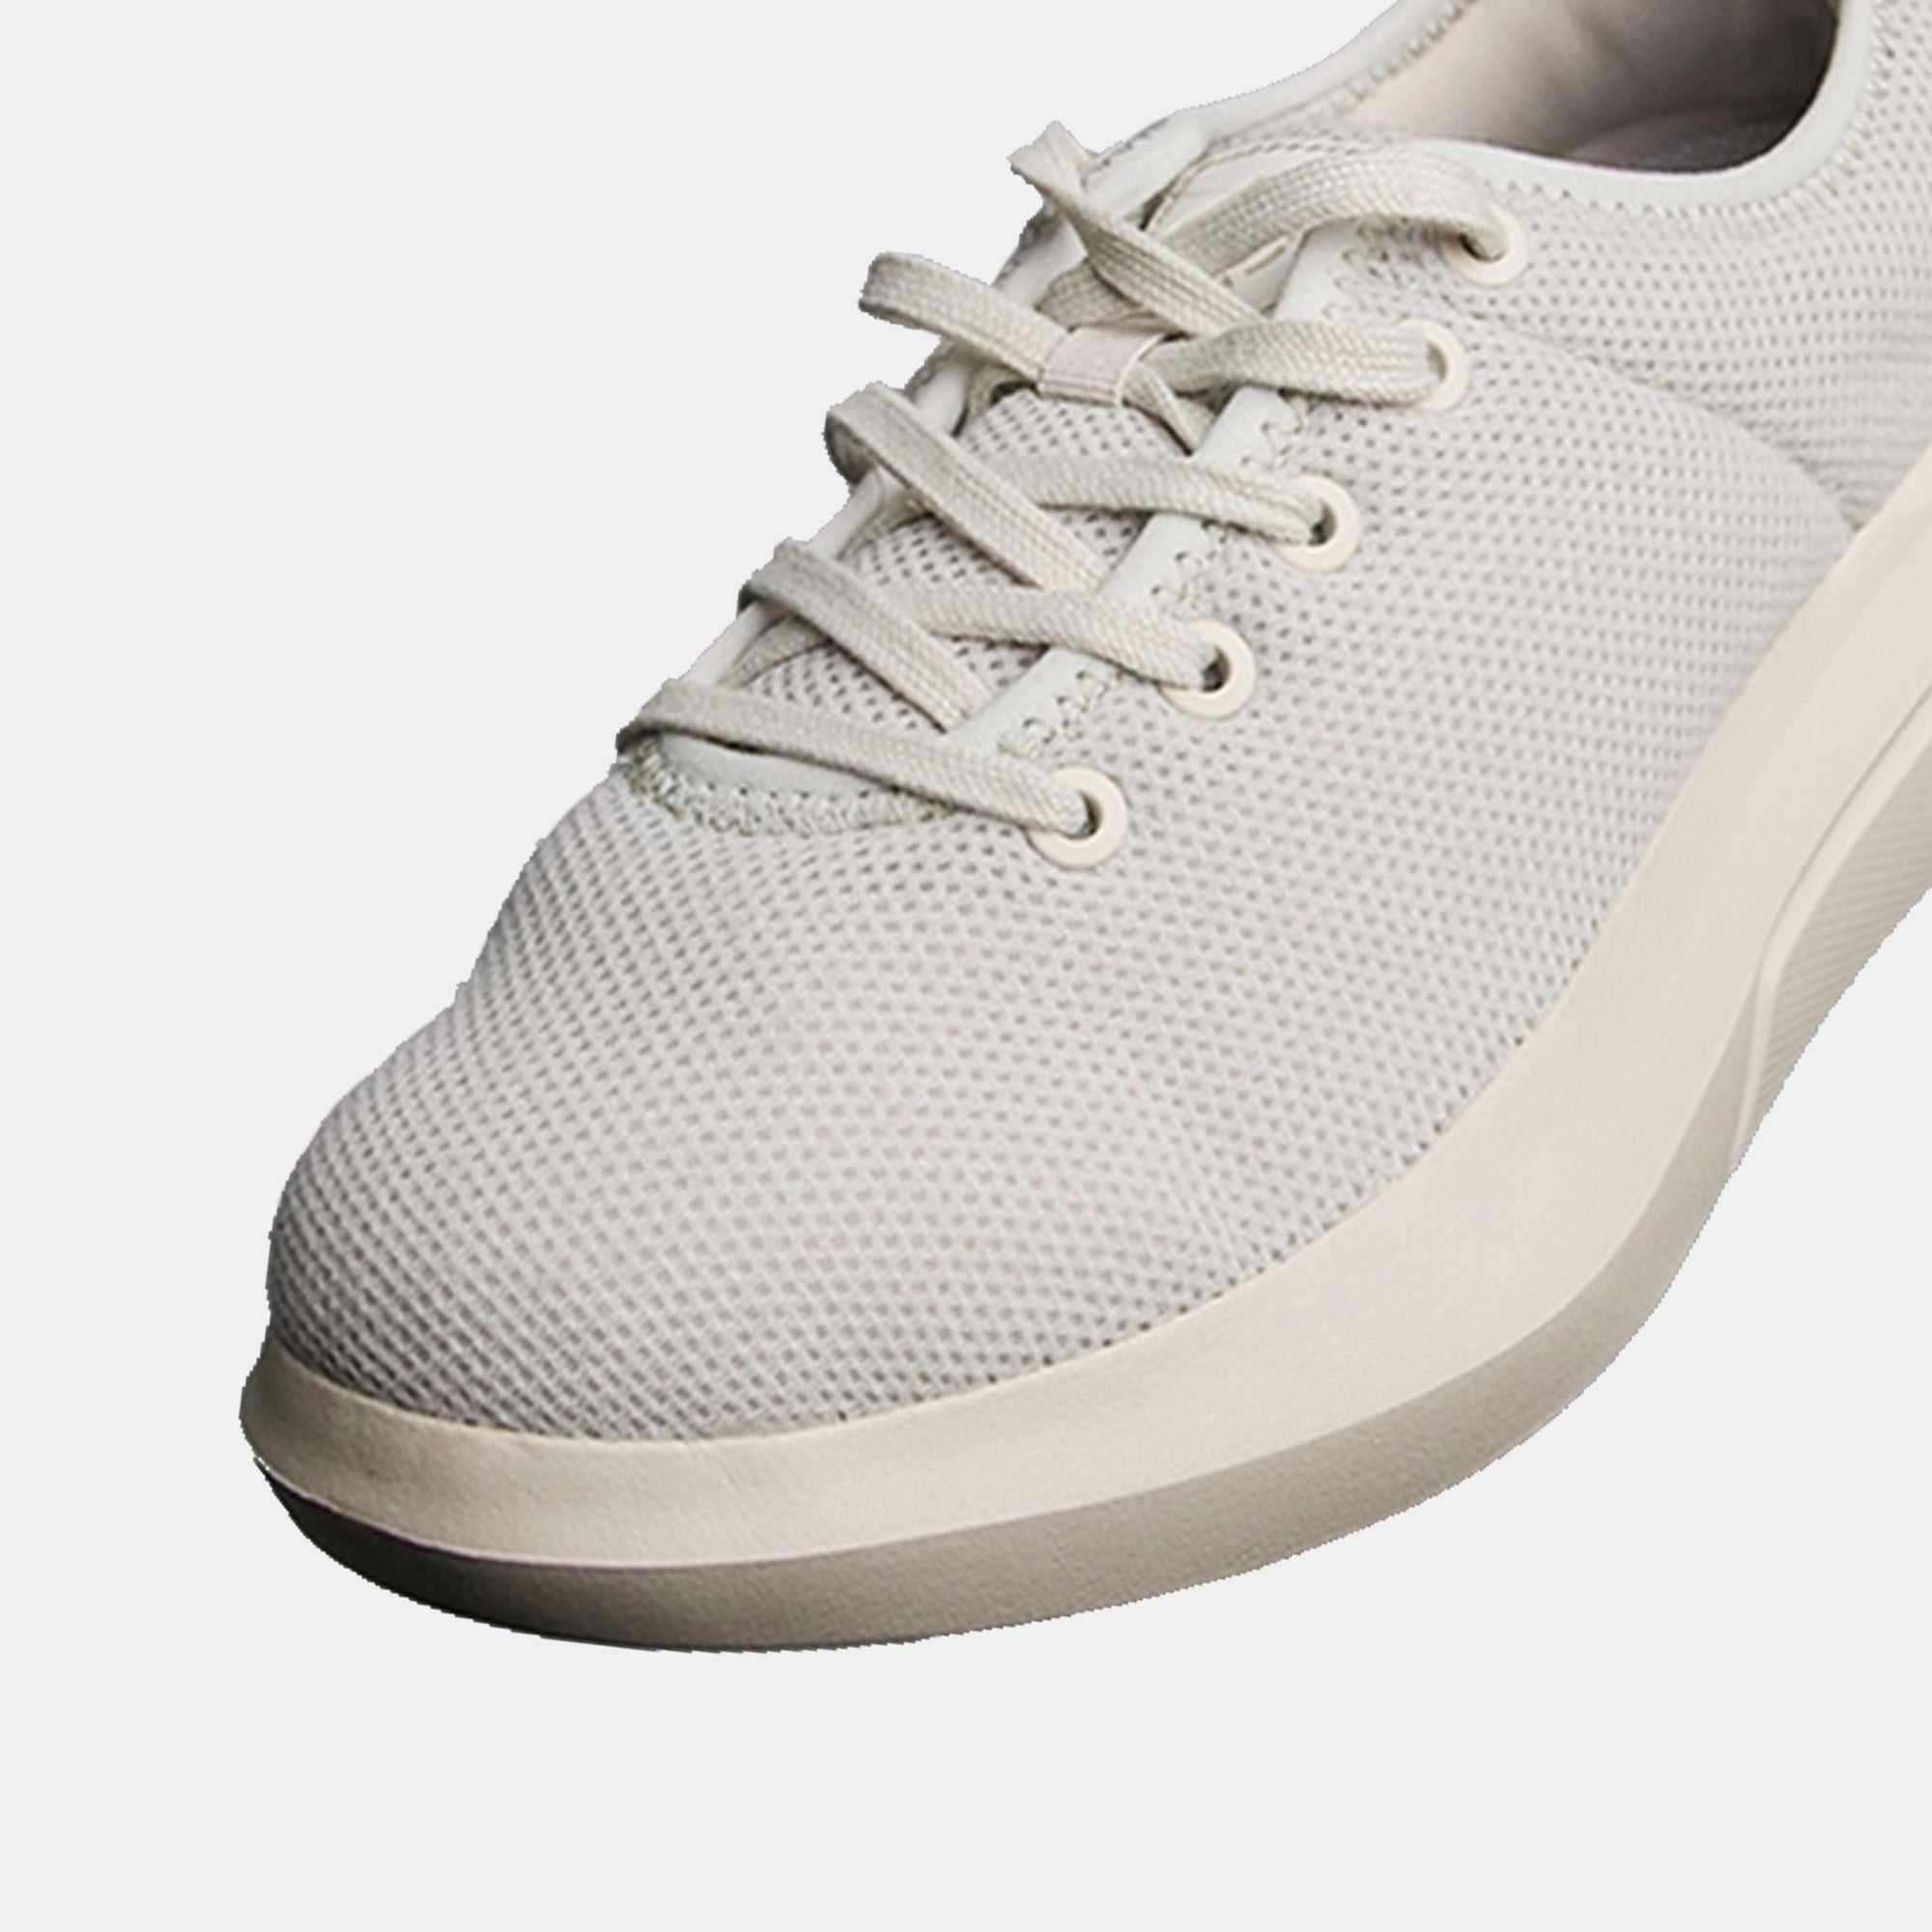 Comfort Plus Sneaker Walking Shoe - Wheat